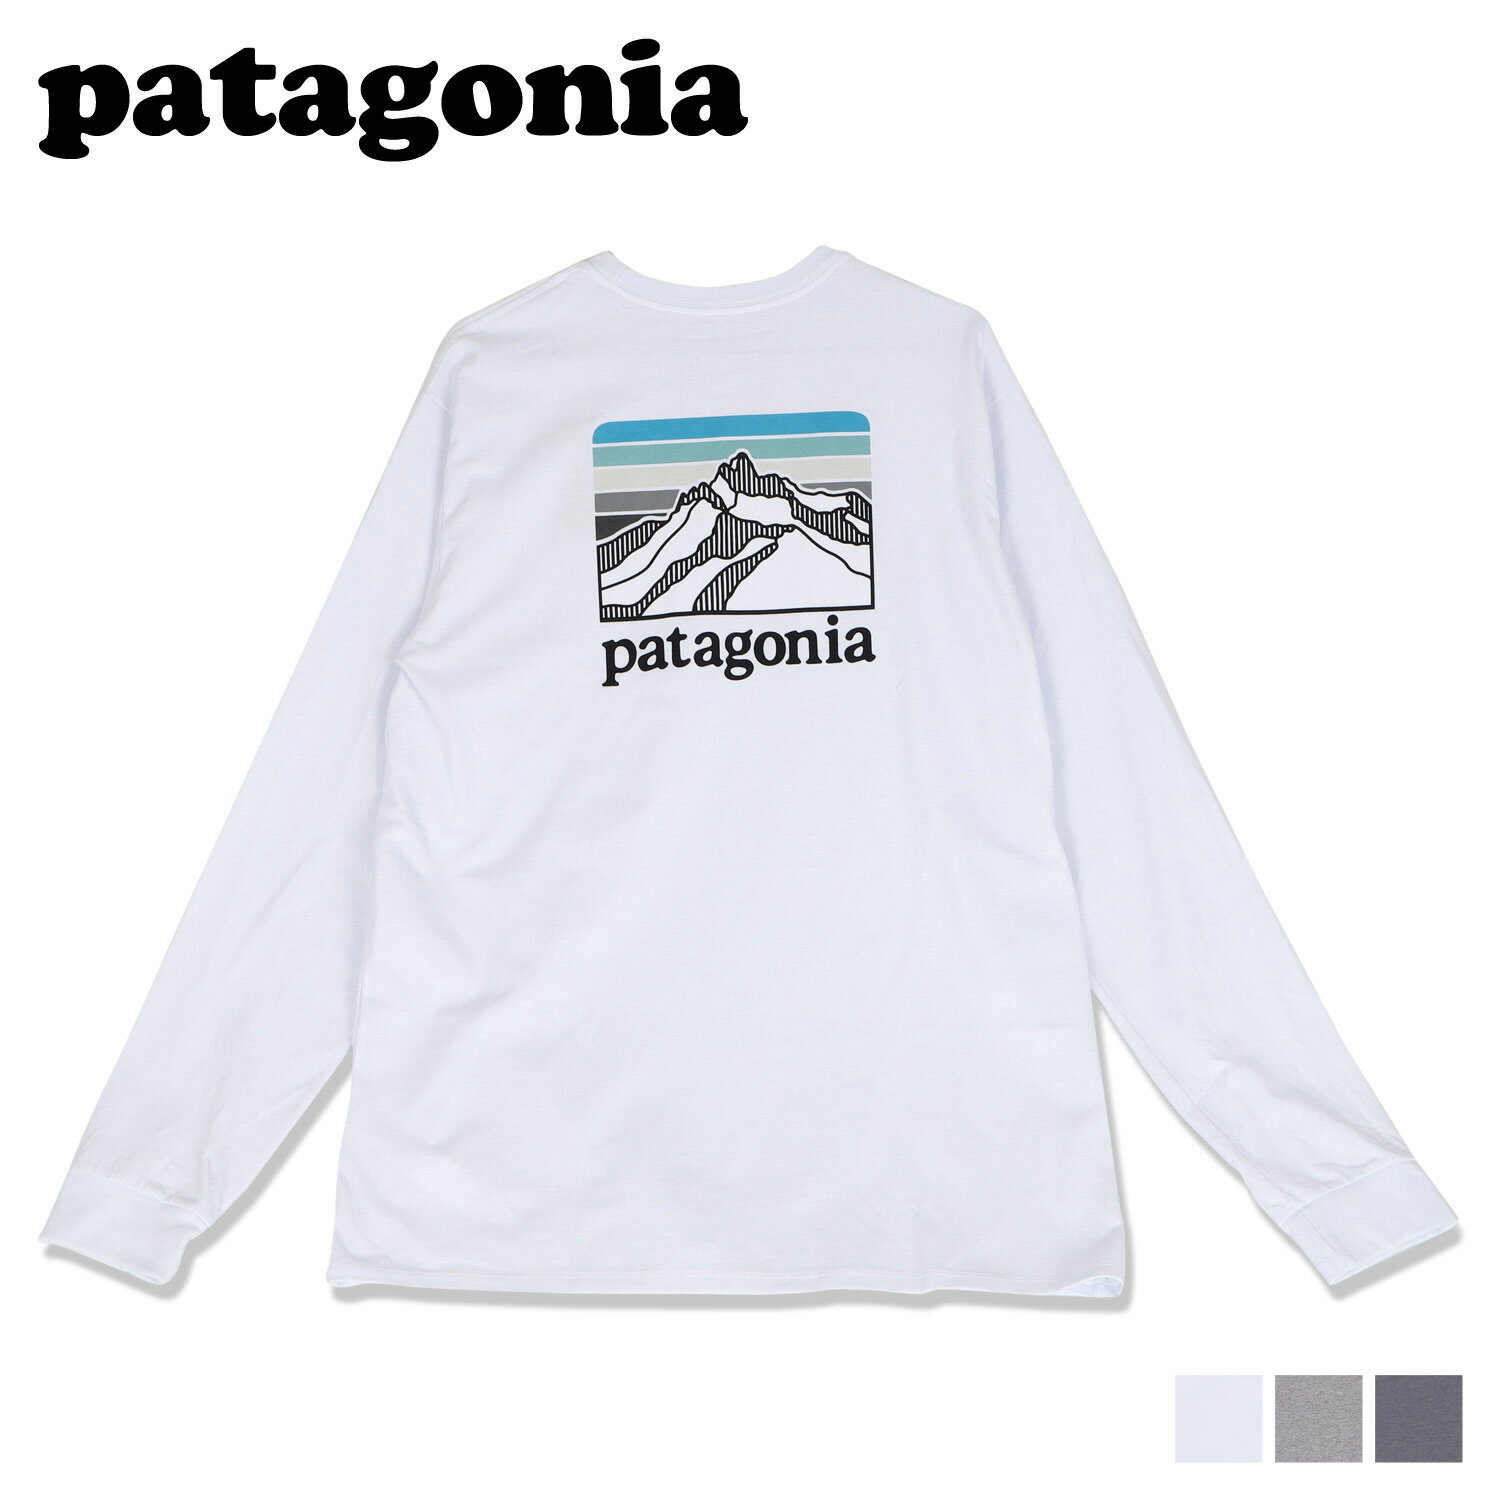 パタゴニア patagonia Tシャツ 長袖 ロンT カットソー メンズ レディース L/S LINE LOGO RIDGE RESPONSIBILI TEE ホワイト グレー 白 38517